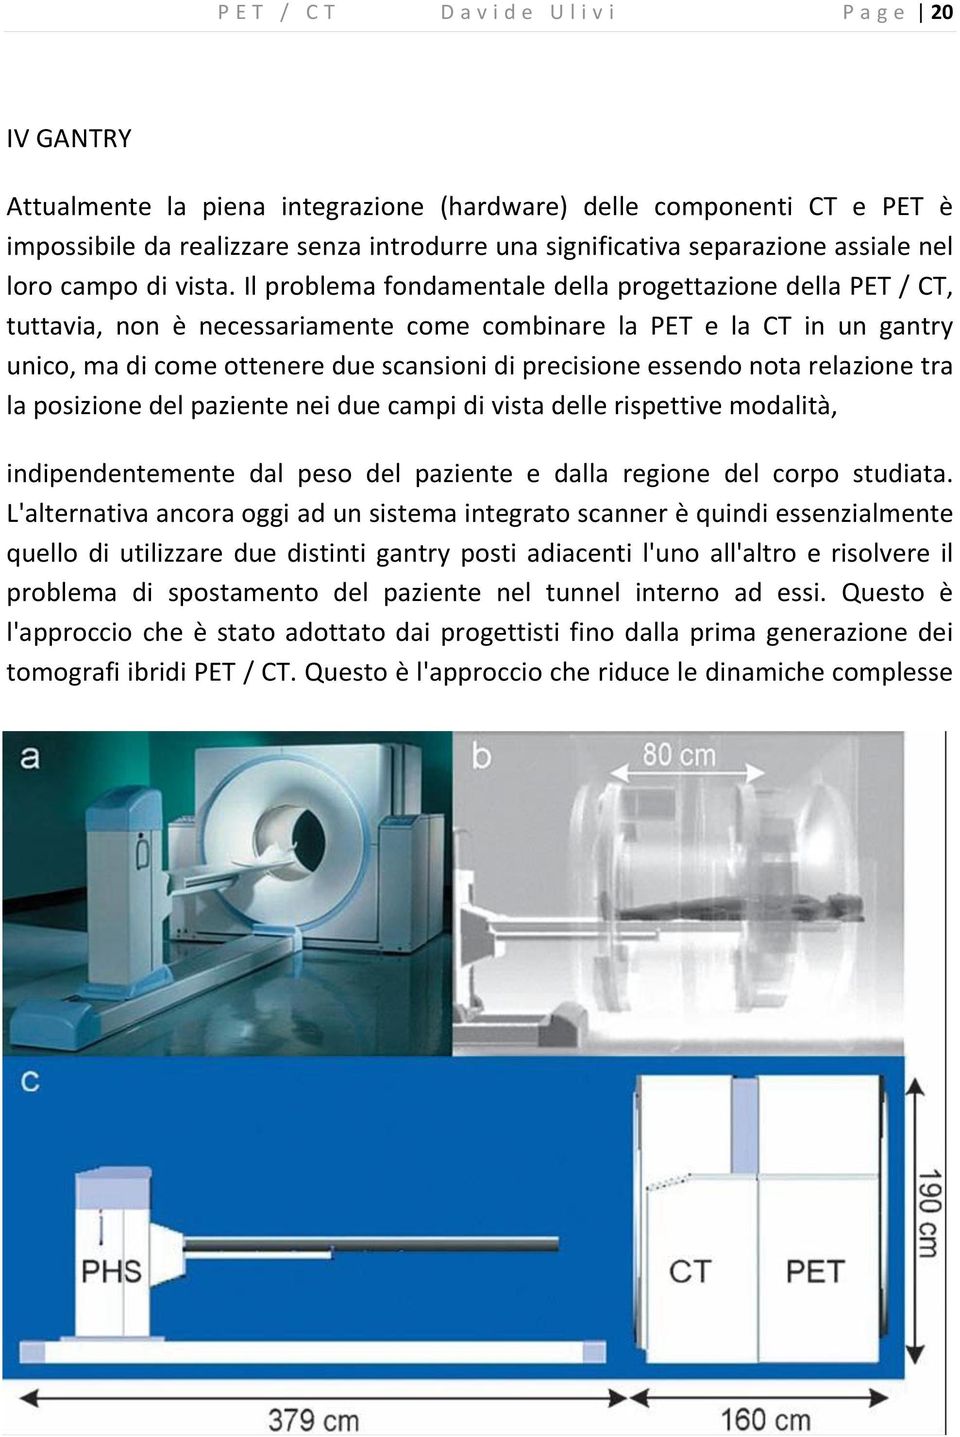 Il problema fondamentale della progettazione della PET / CT, tuttavia, non è necessariamente come combinare la PET e la CT in un gantry unico, ma di come ottenere due scansioni di precisione essendo